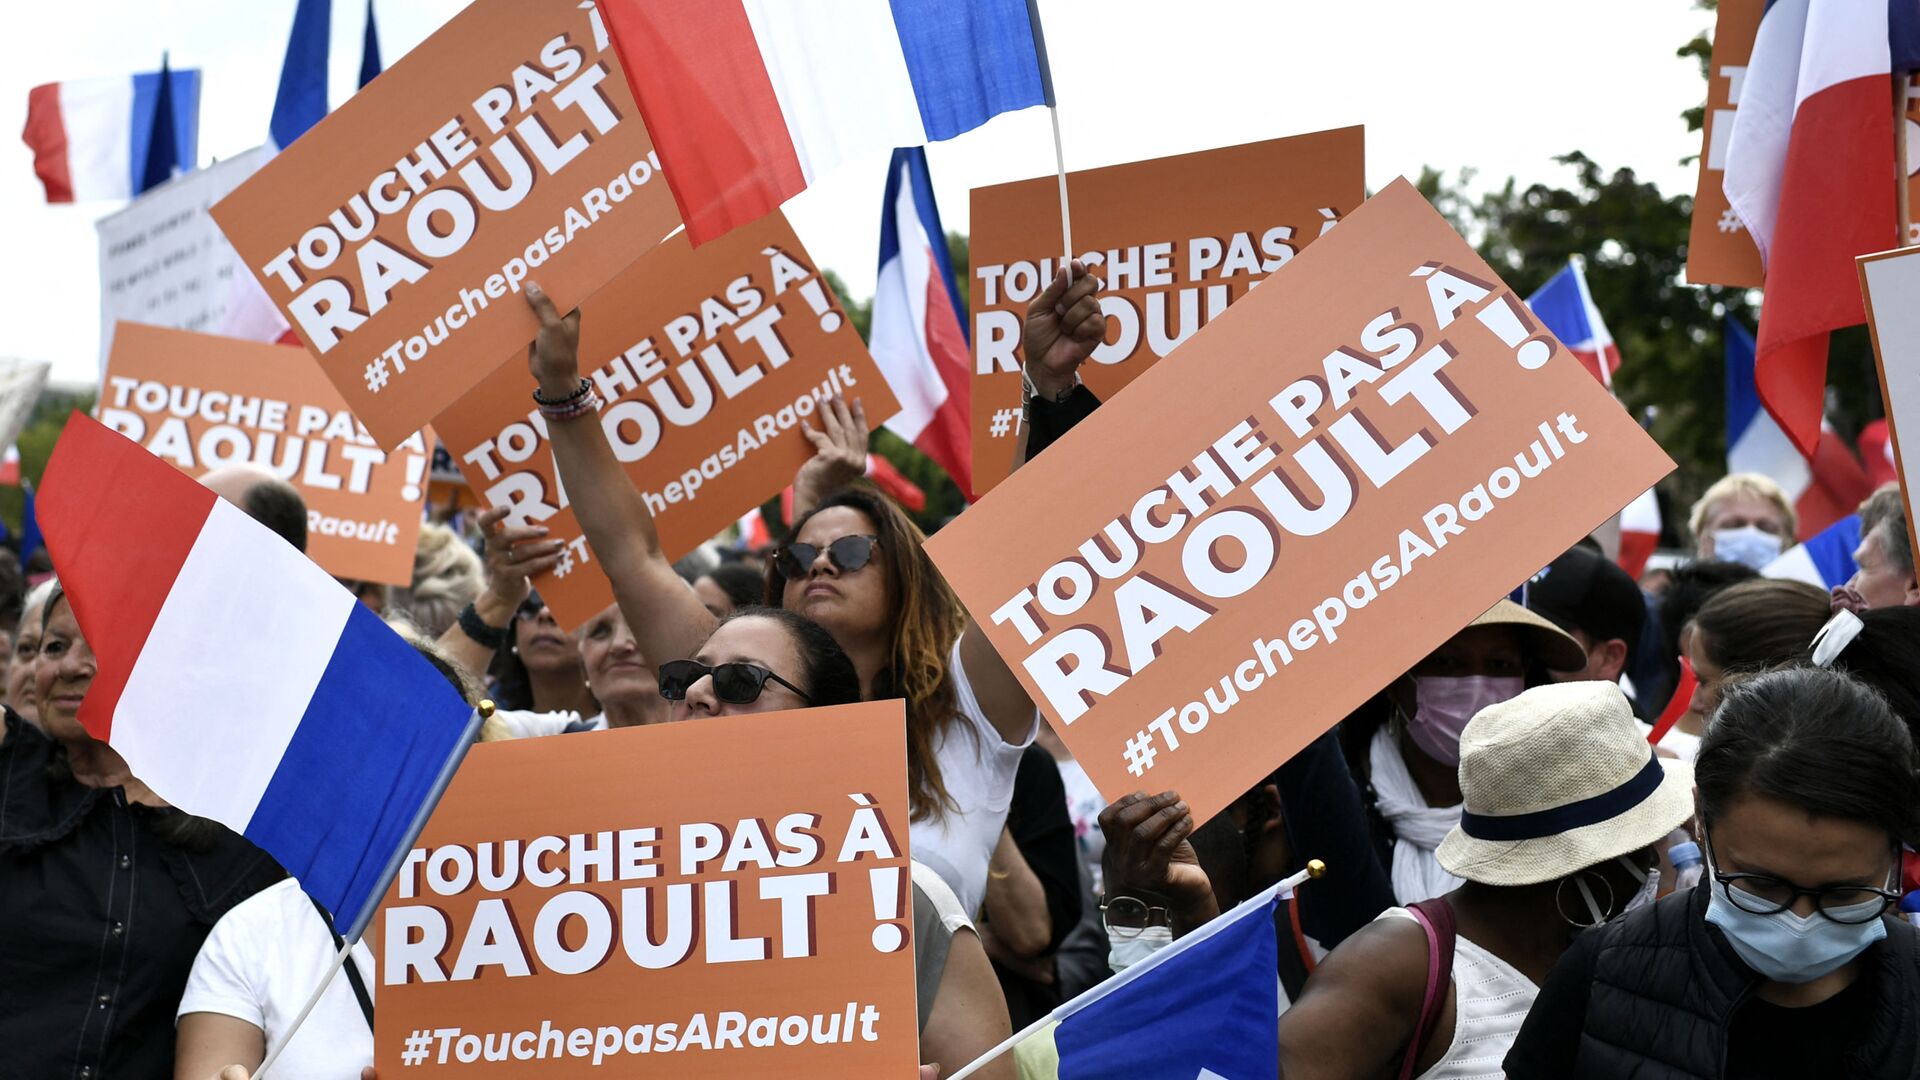 Manifestants à Paris brandissent des pancartes «Touche pas à Didier Raoult!» - Sputnik Afrique, 1920, 31.08.2021